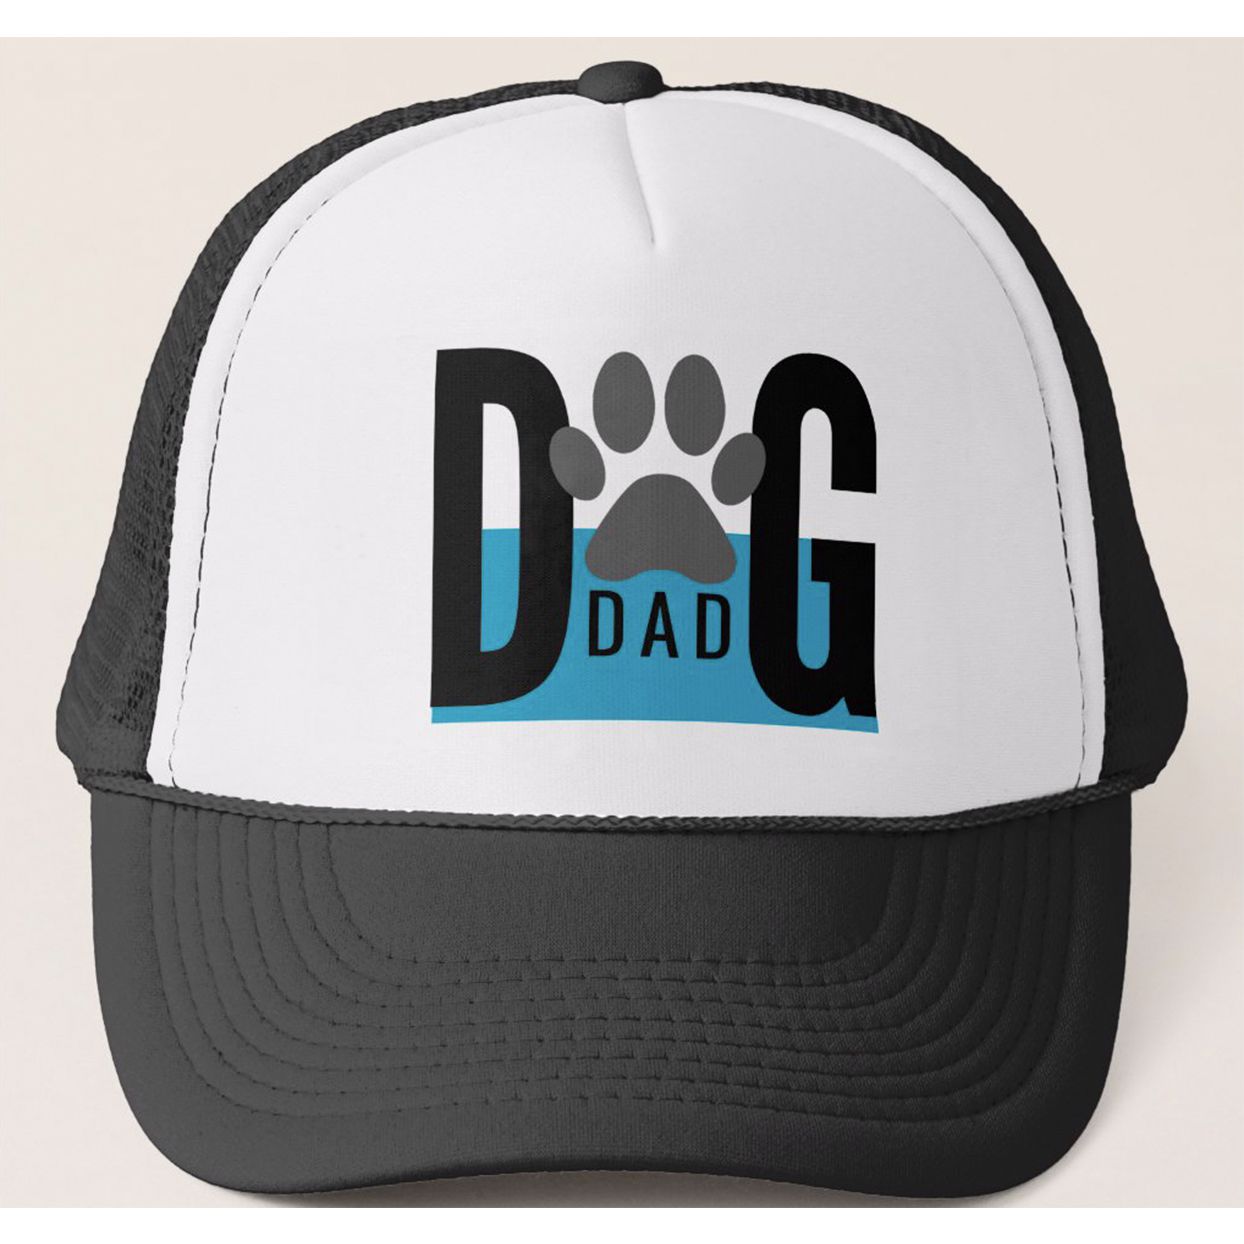 dog dad trucker hat